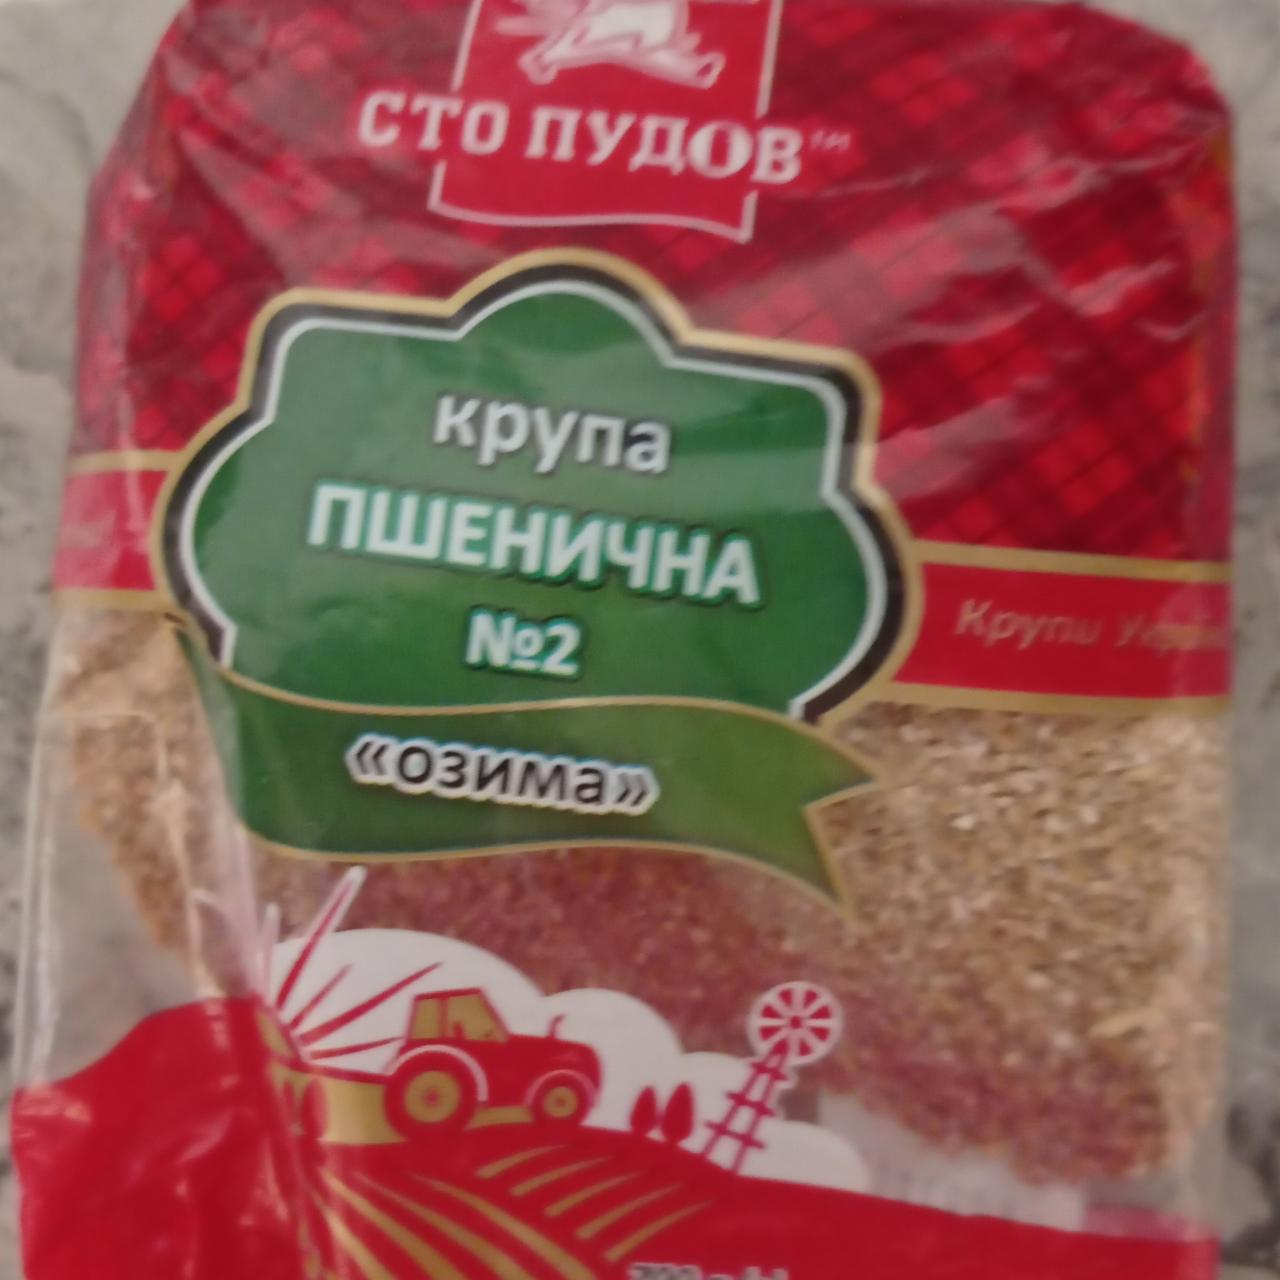 Фото - Крупа пшенична №2 Озима Сто Пудов